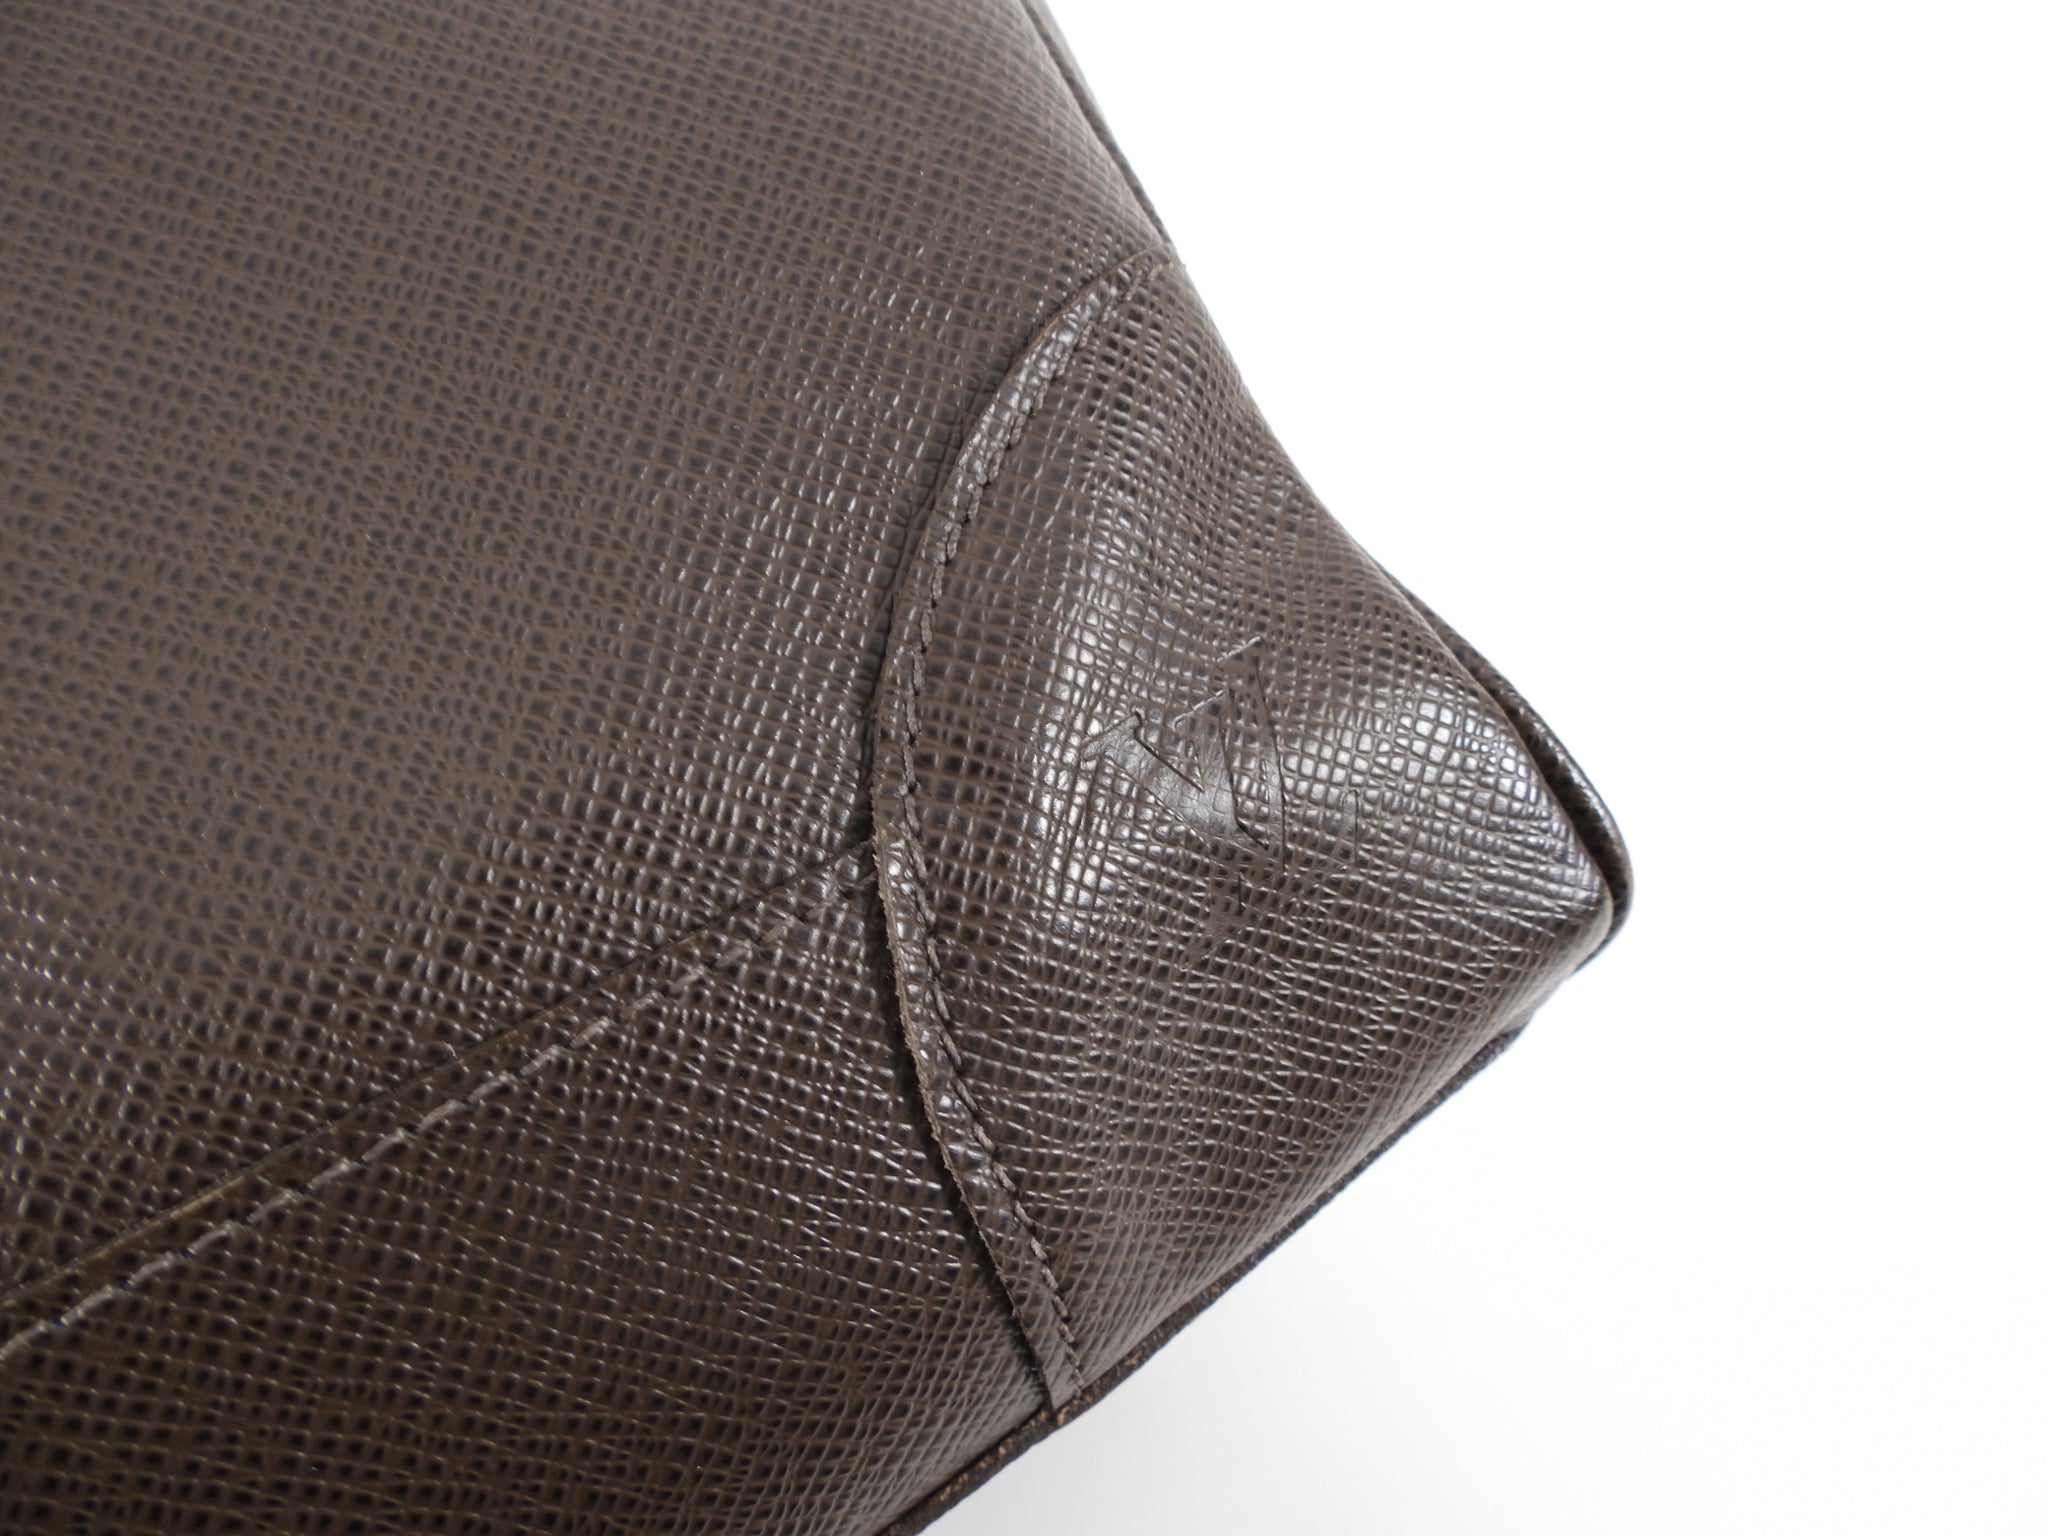 Louis Vuitton - Nikolai Ardoise Duffle/Travel Bag (Taiga Leather)